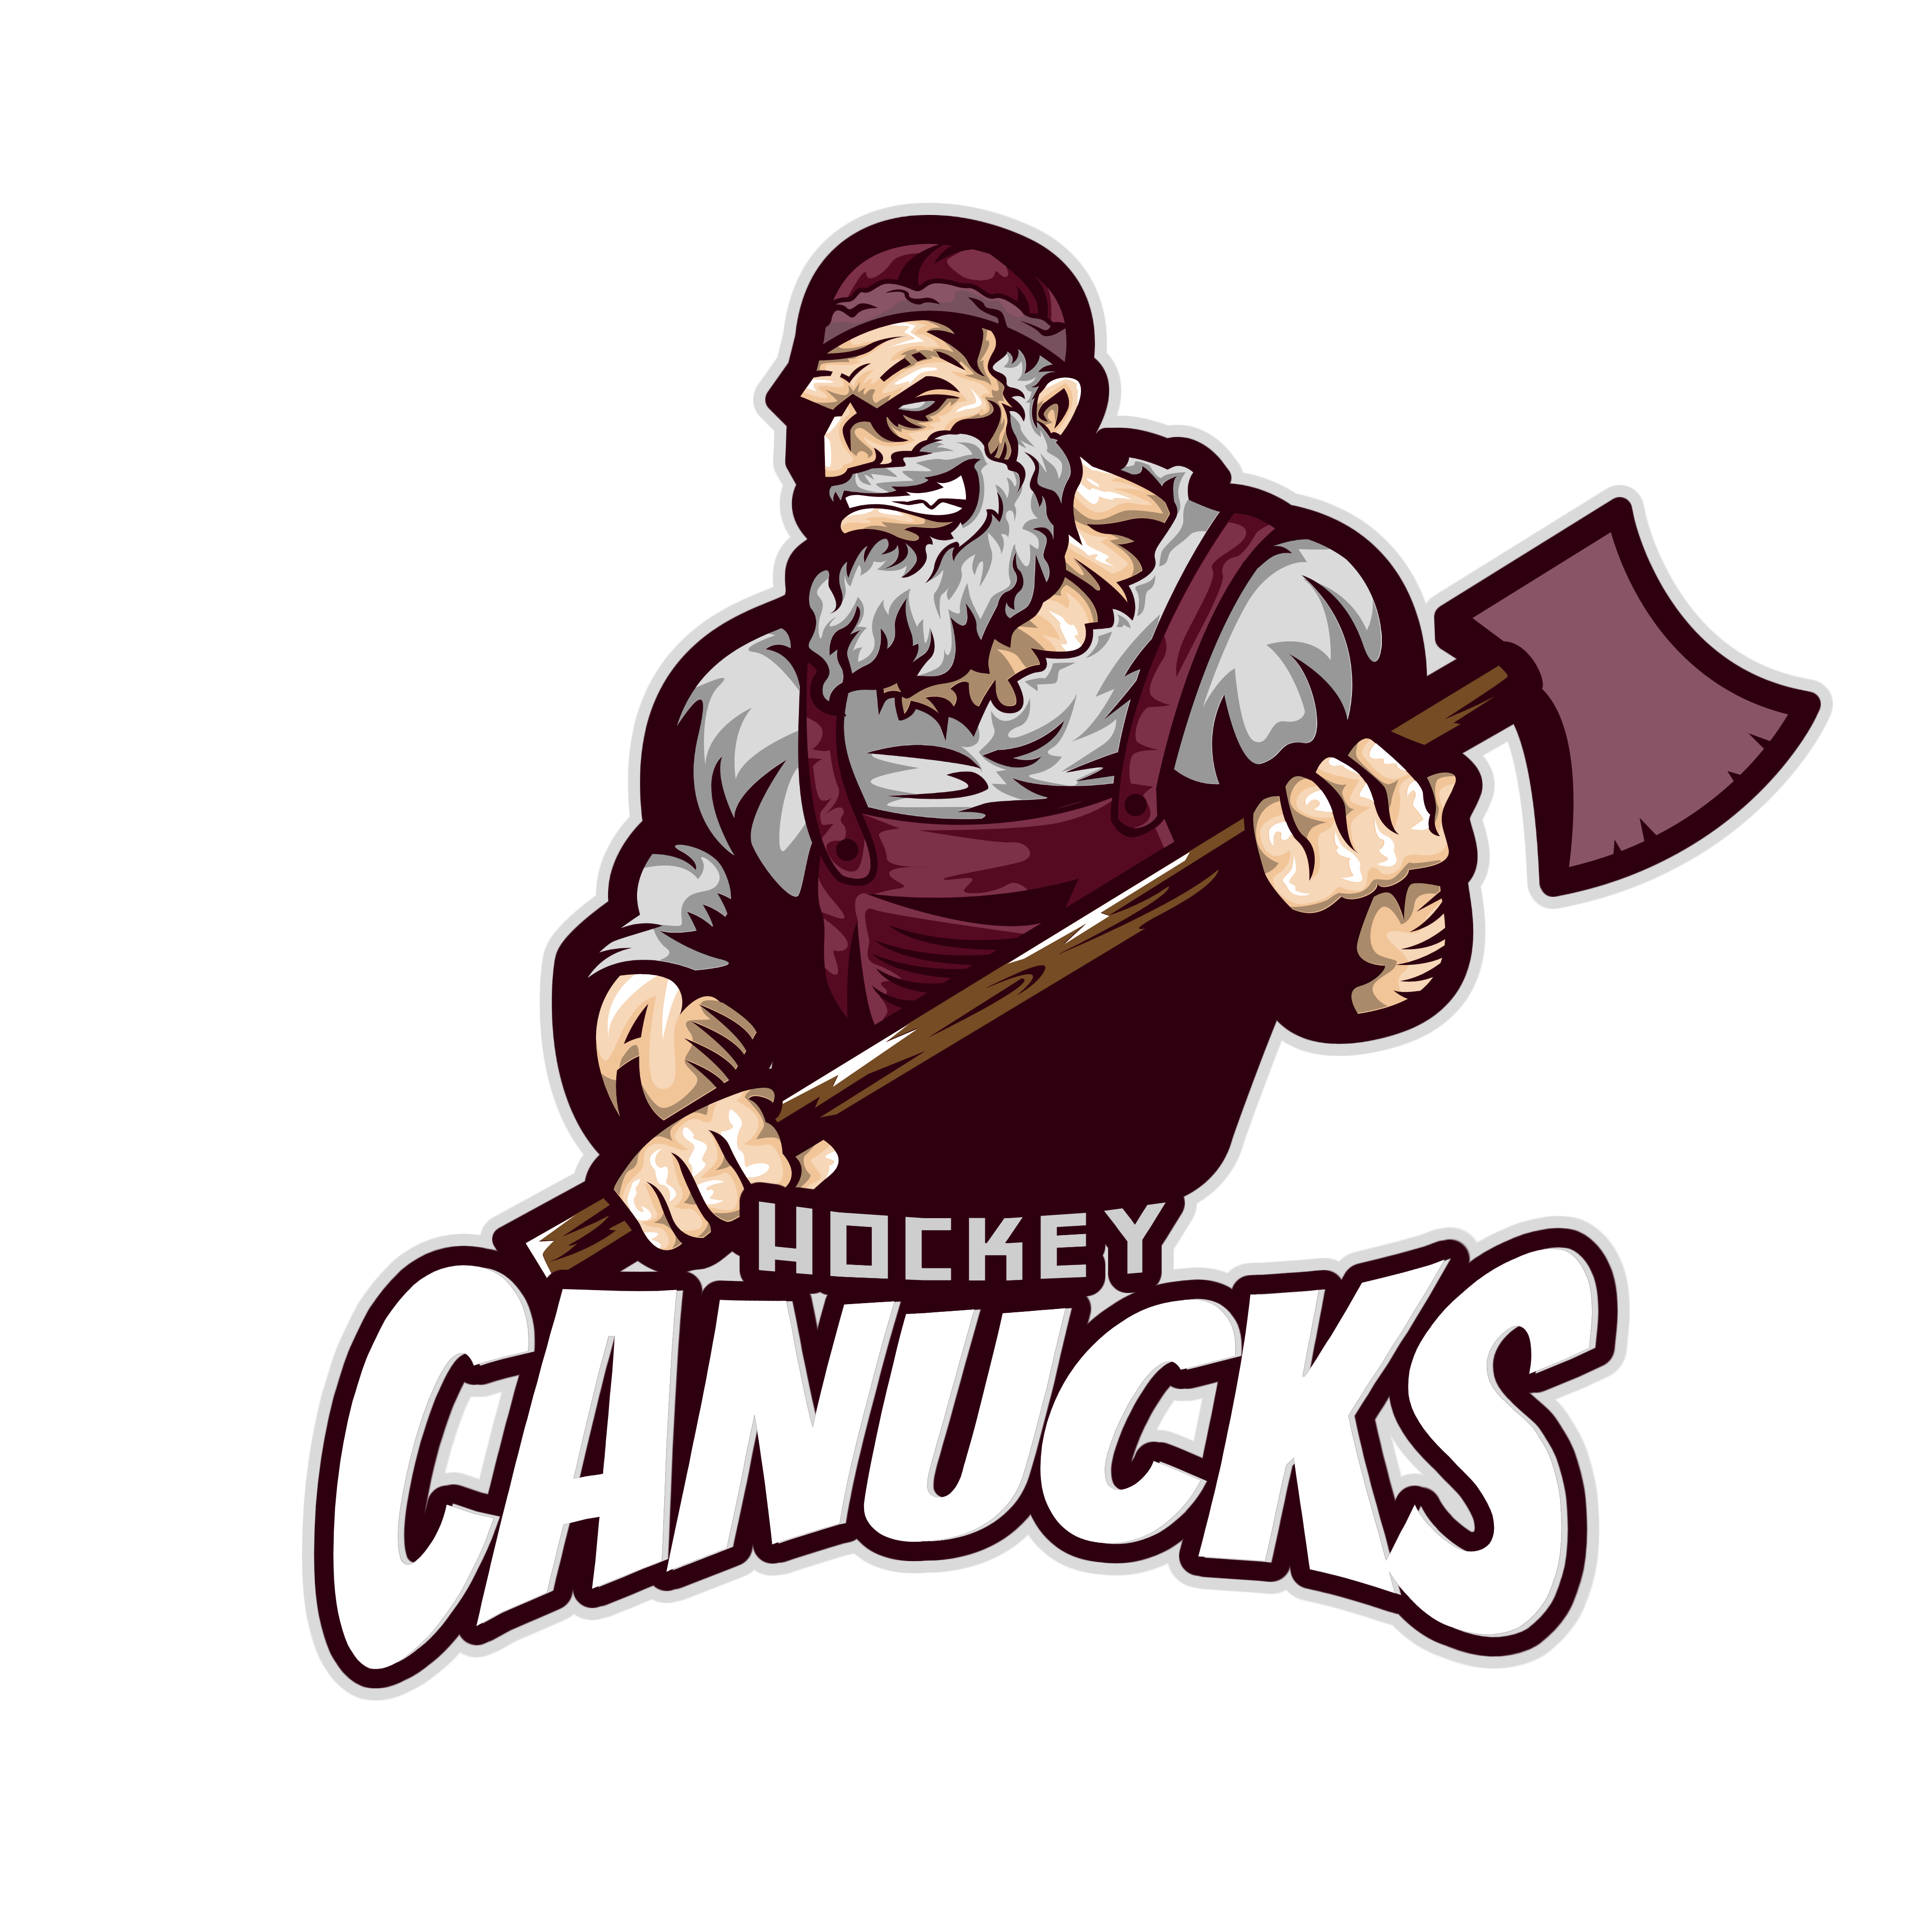 Canucks Hockey